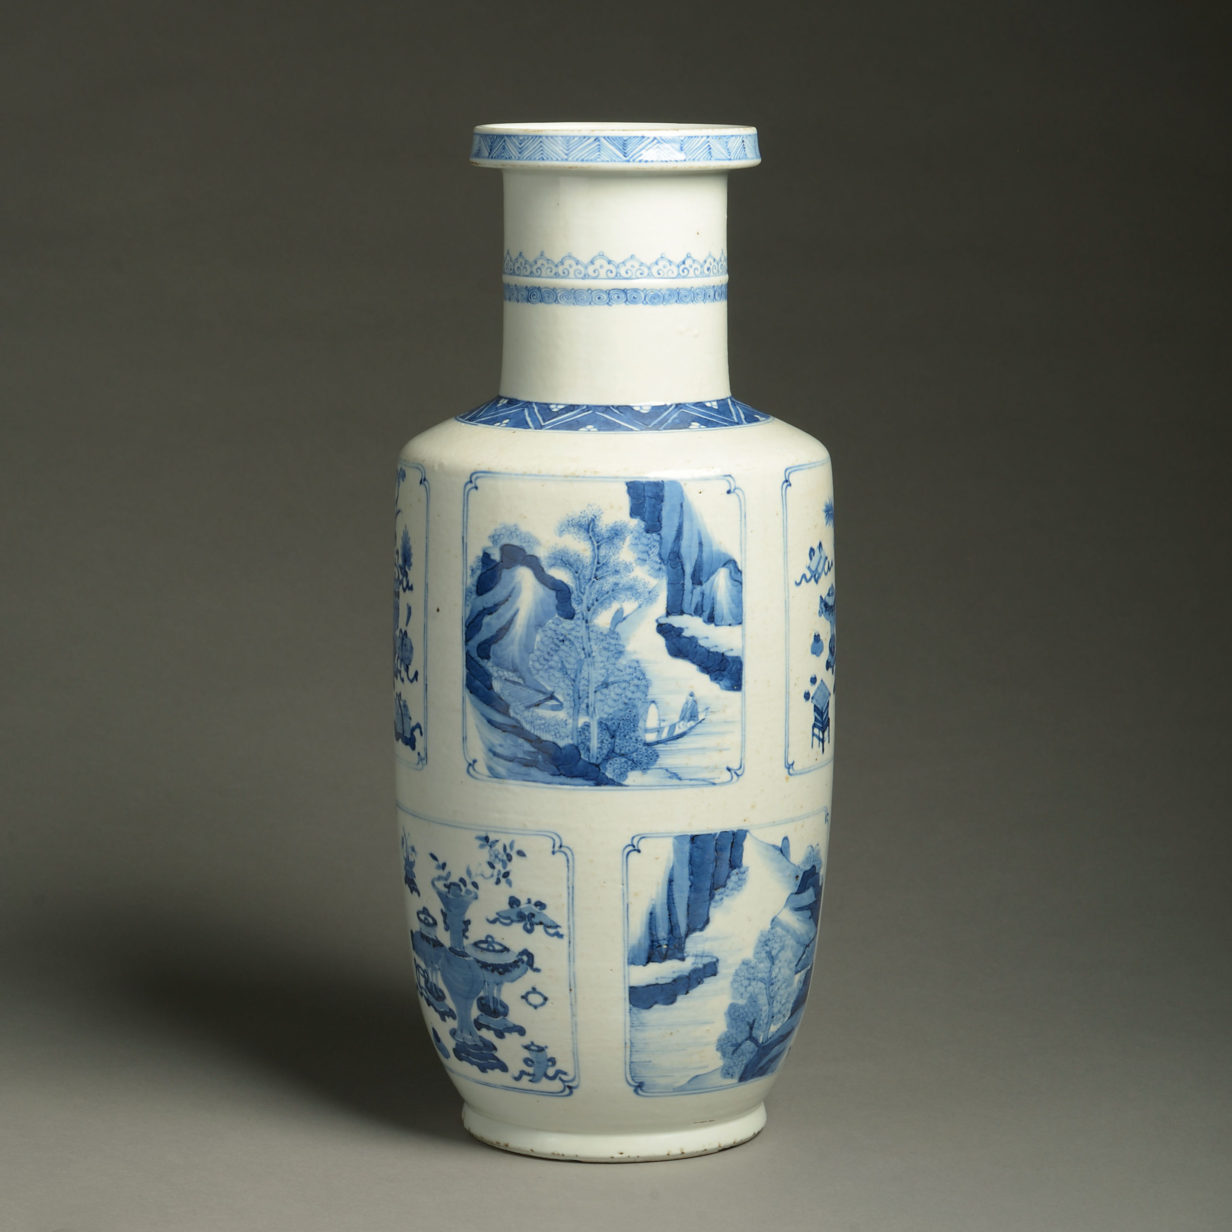 A 19th century blue & white porcelain rouleau vase